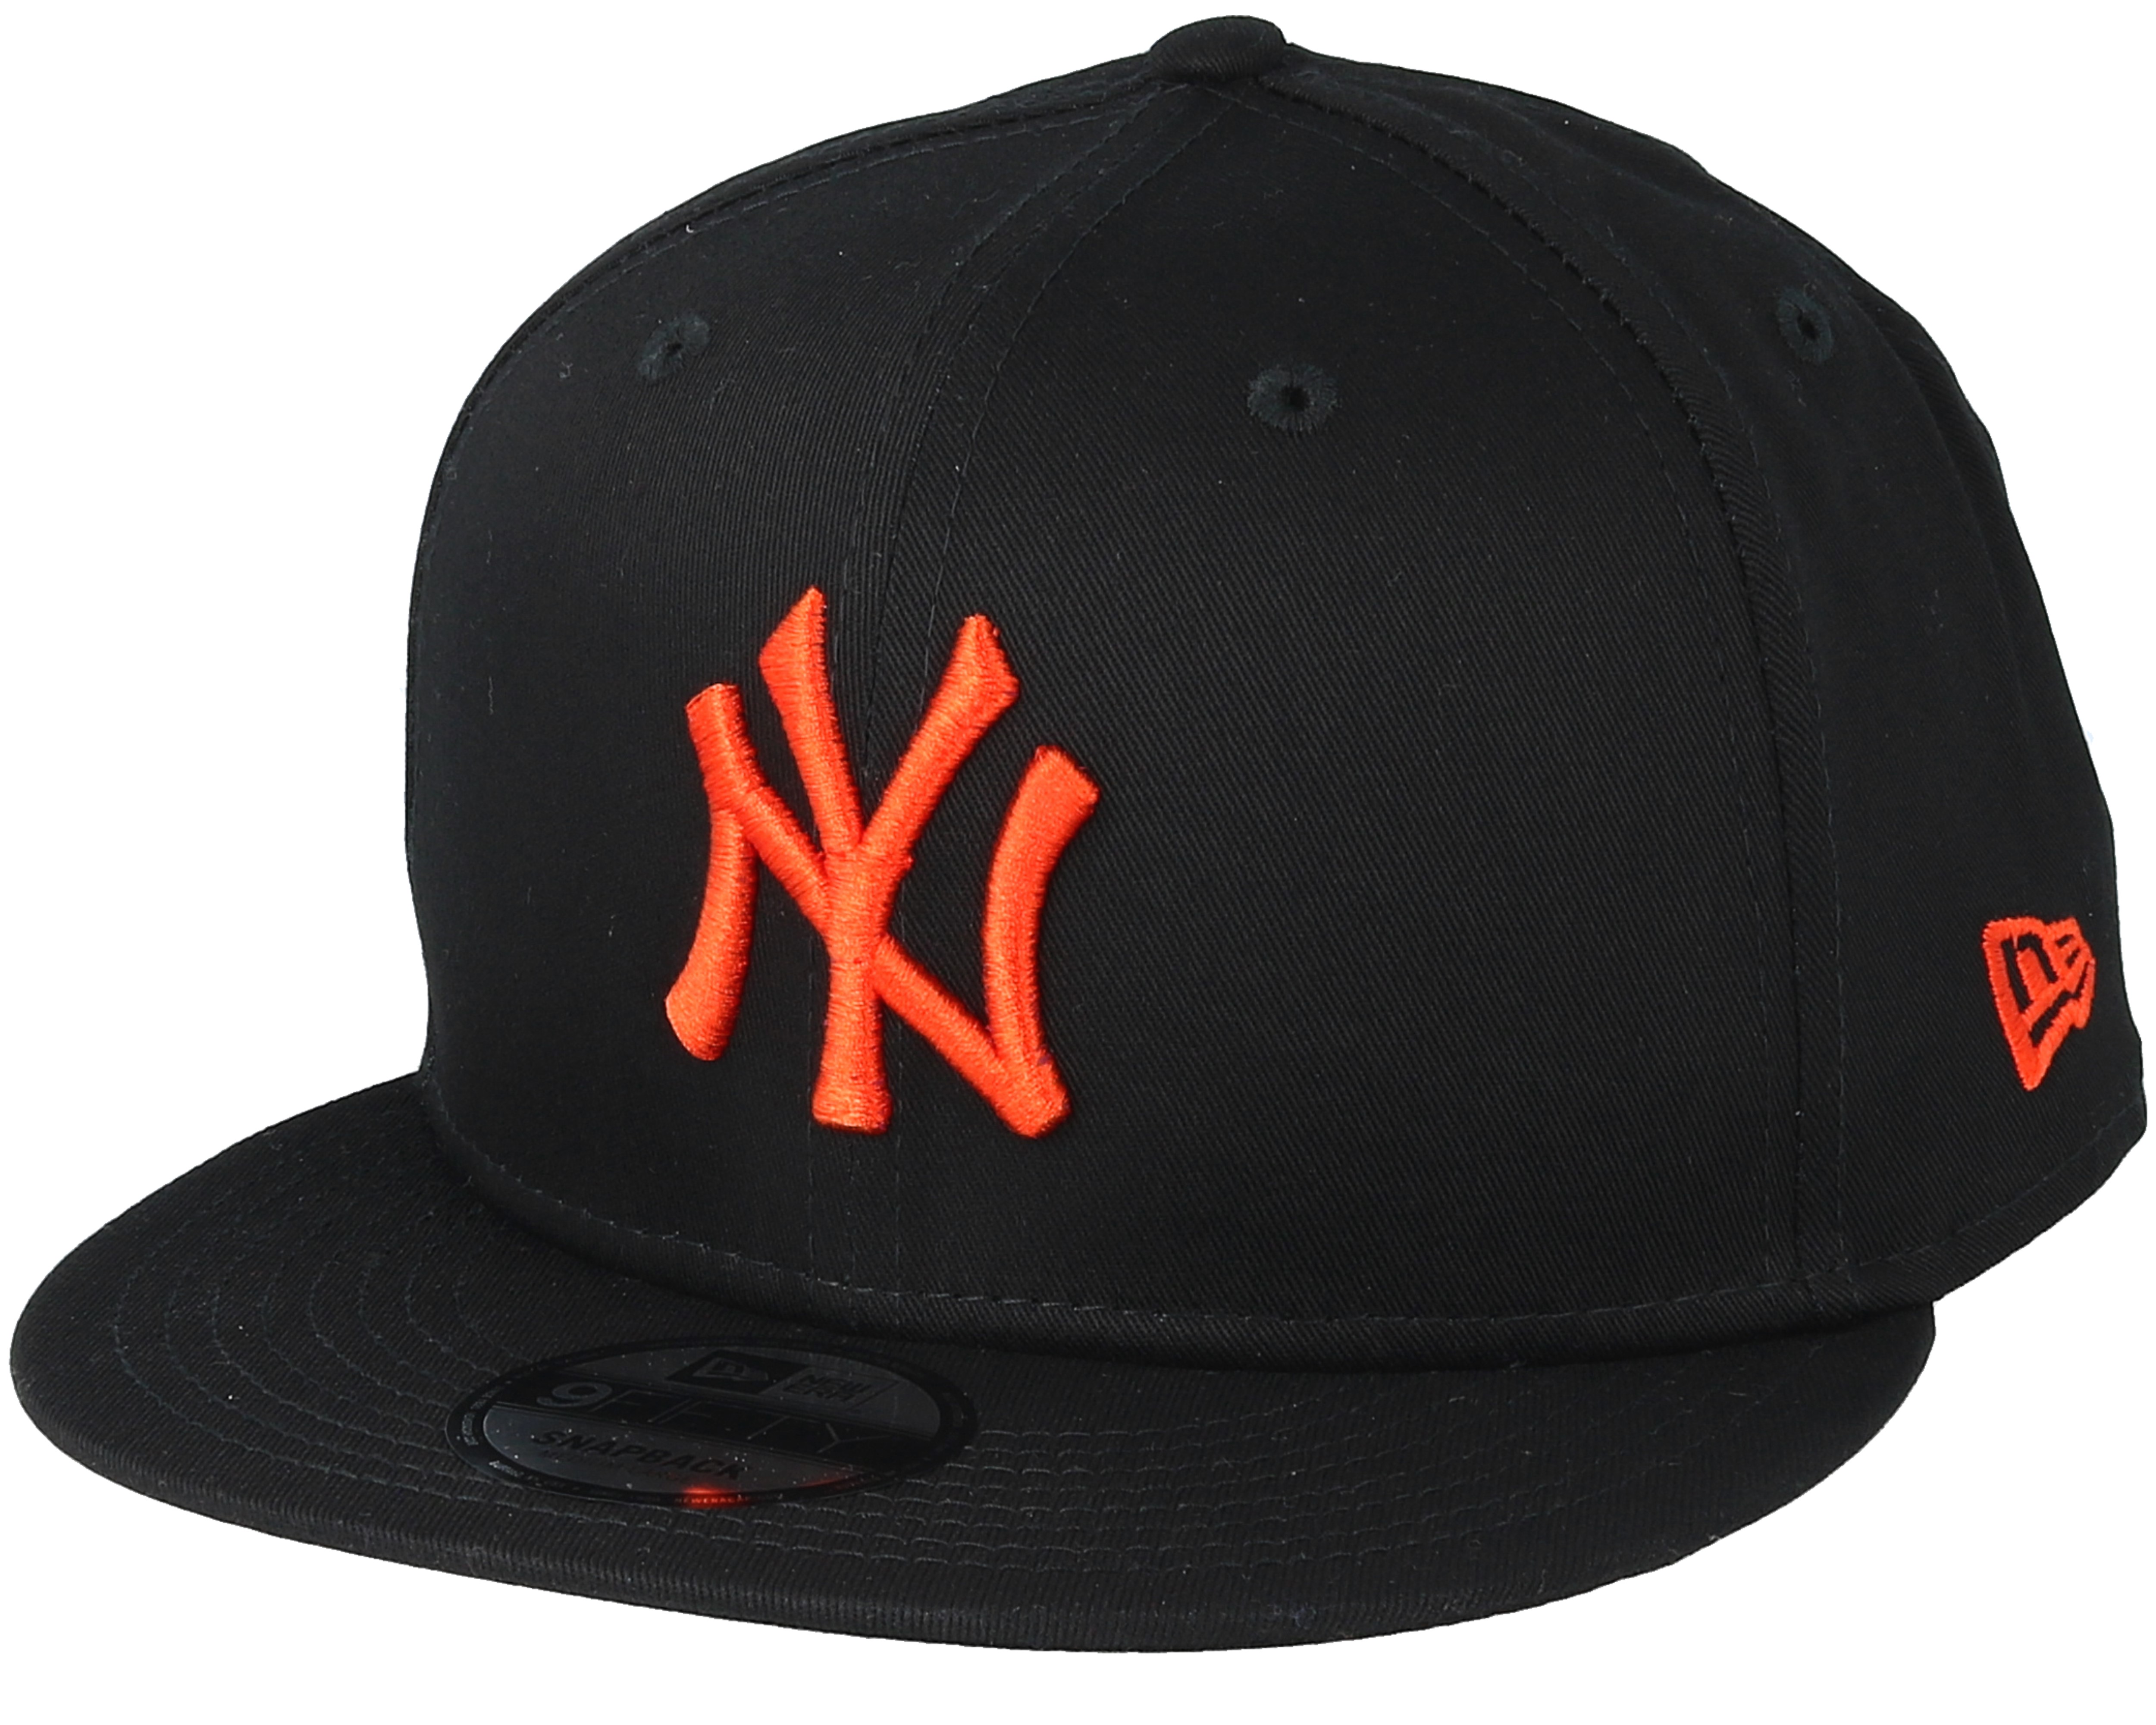 New Era Orange Logo Delaware Outline New York Yankees MLB Black Backpack